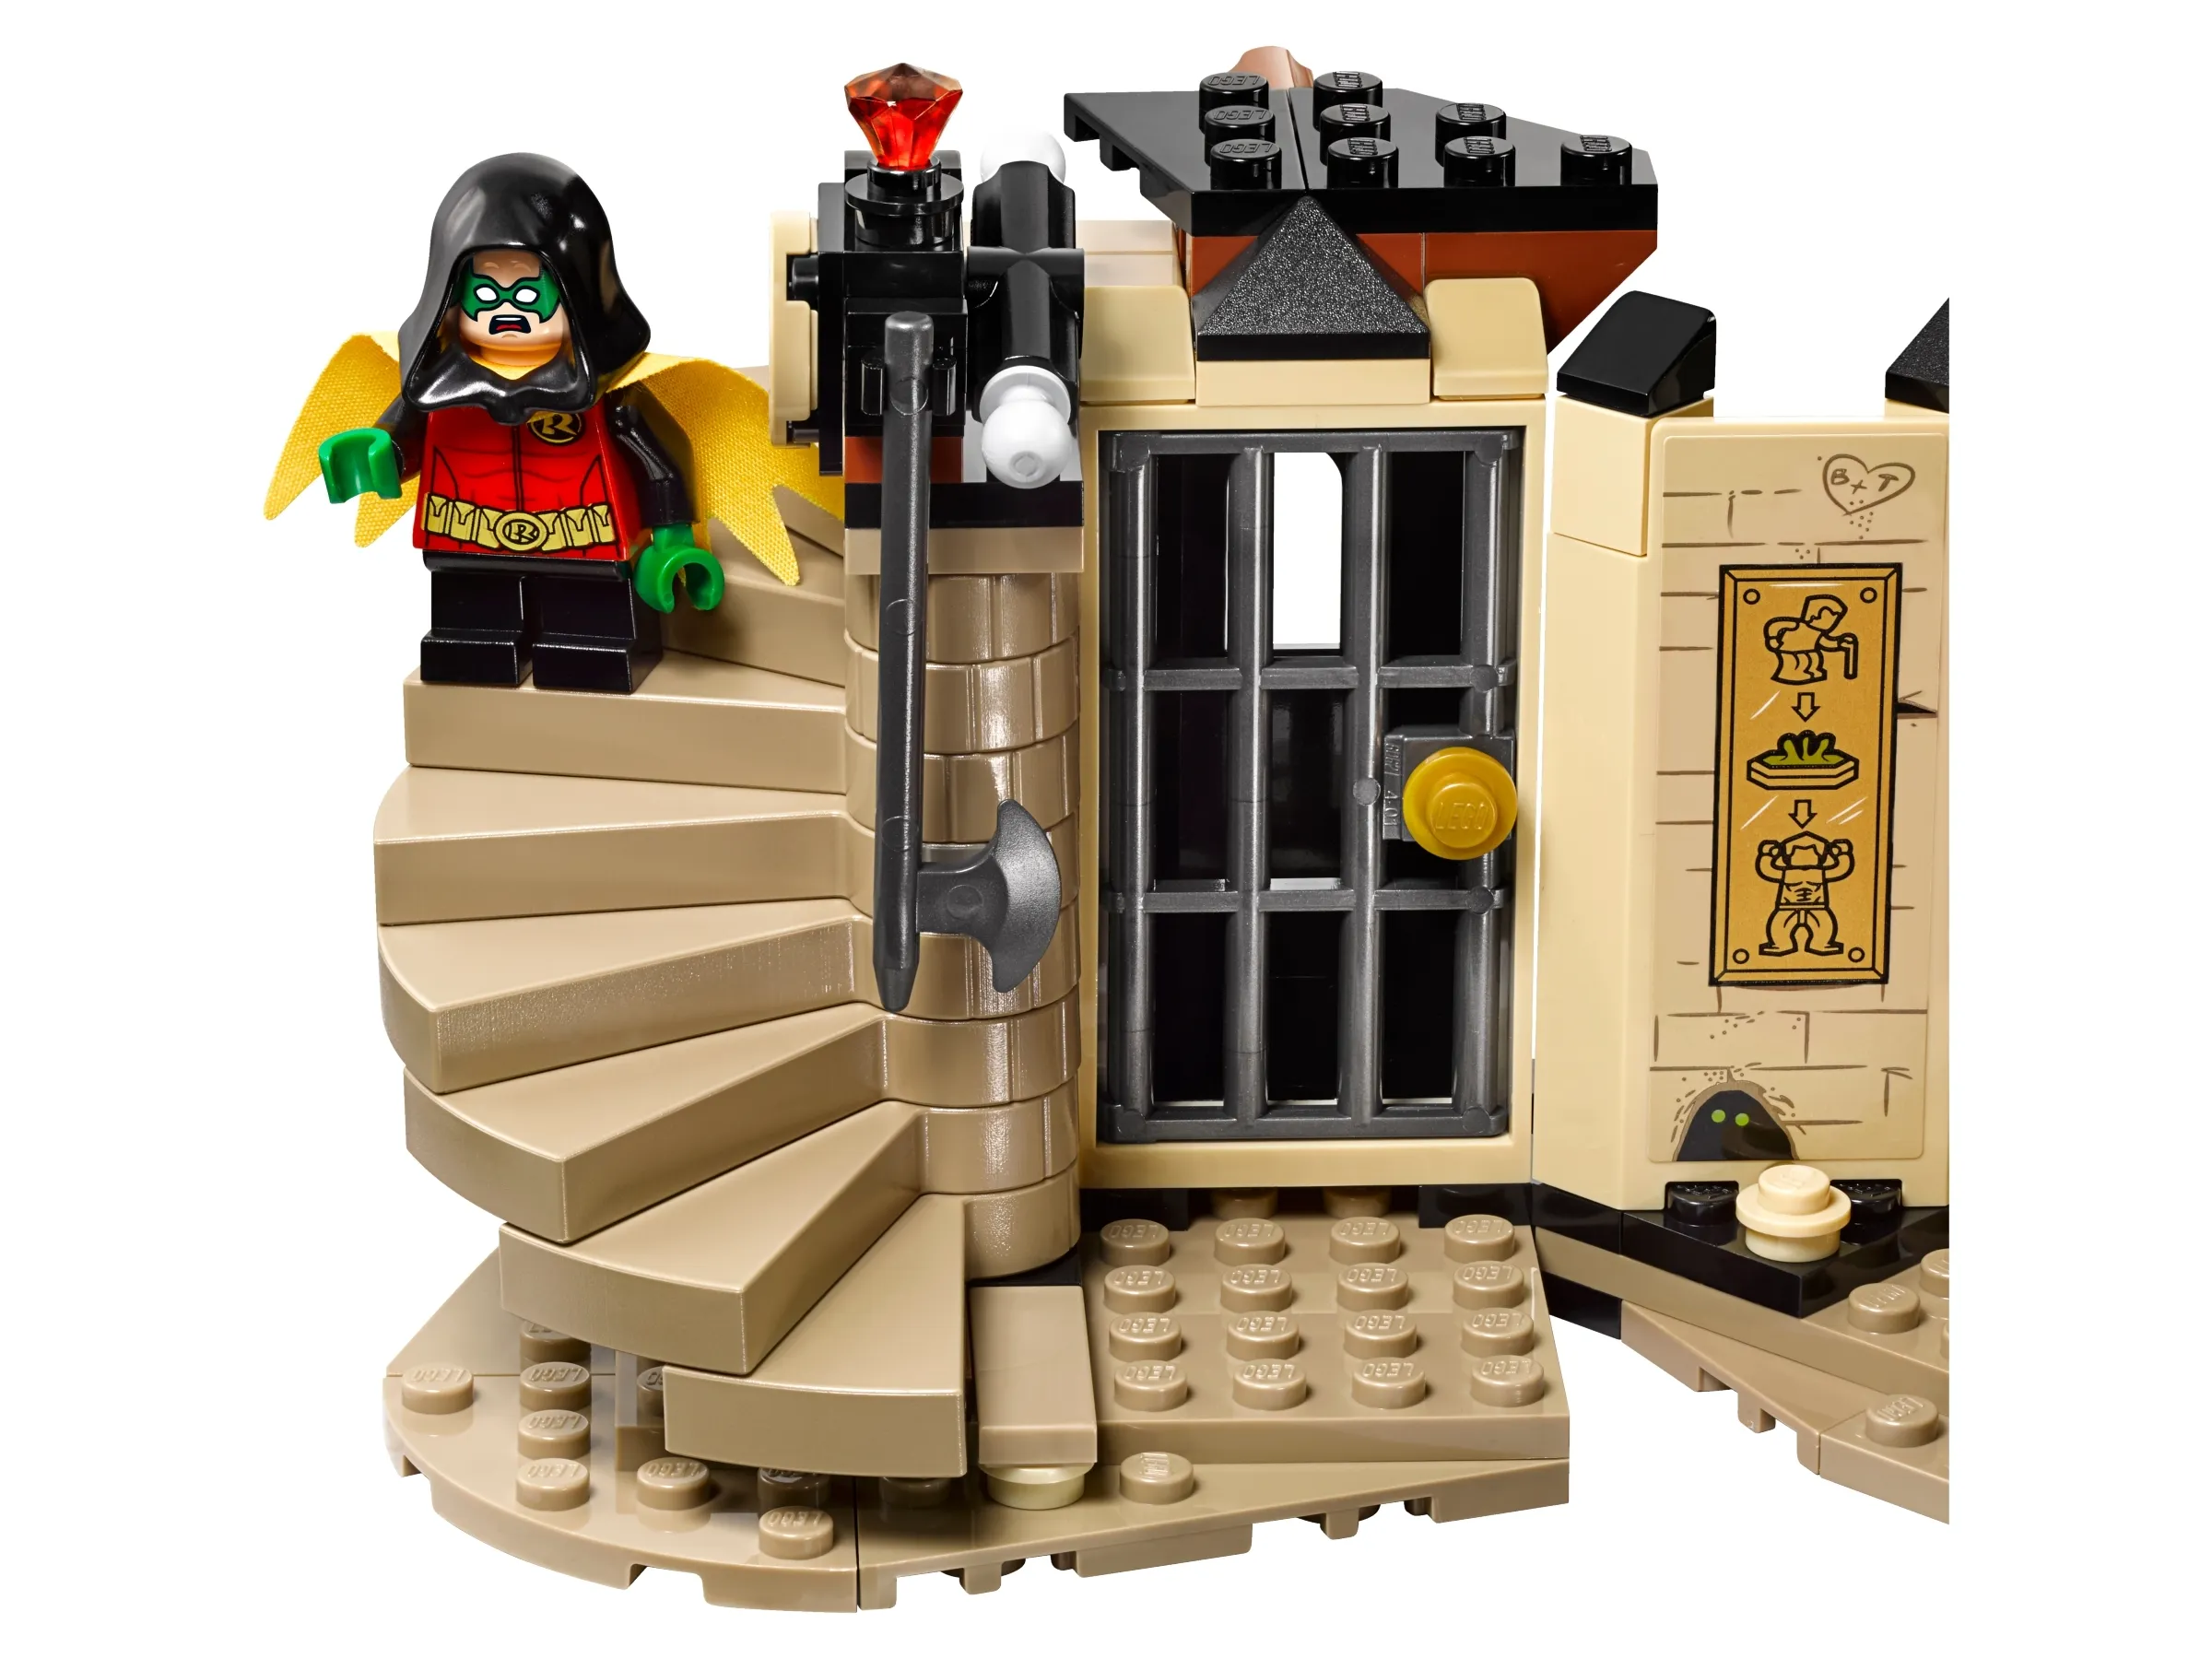 LEGO Batman Batboat The Penguin Pursuit! • Set 76158 • SetDB